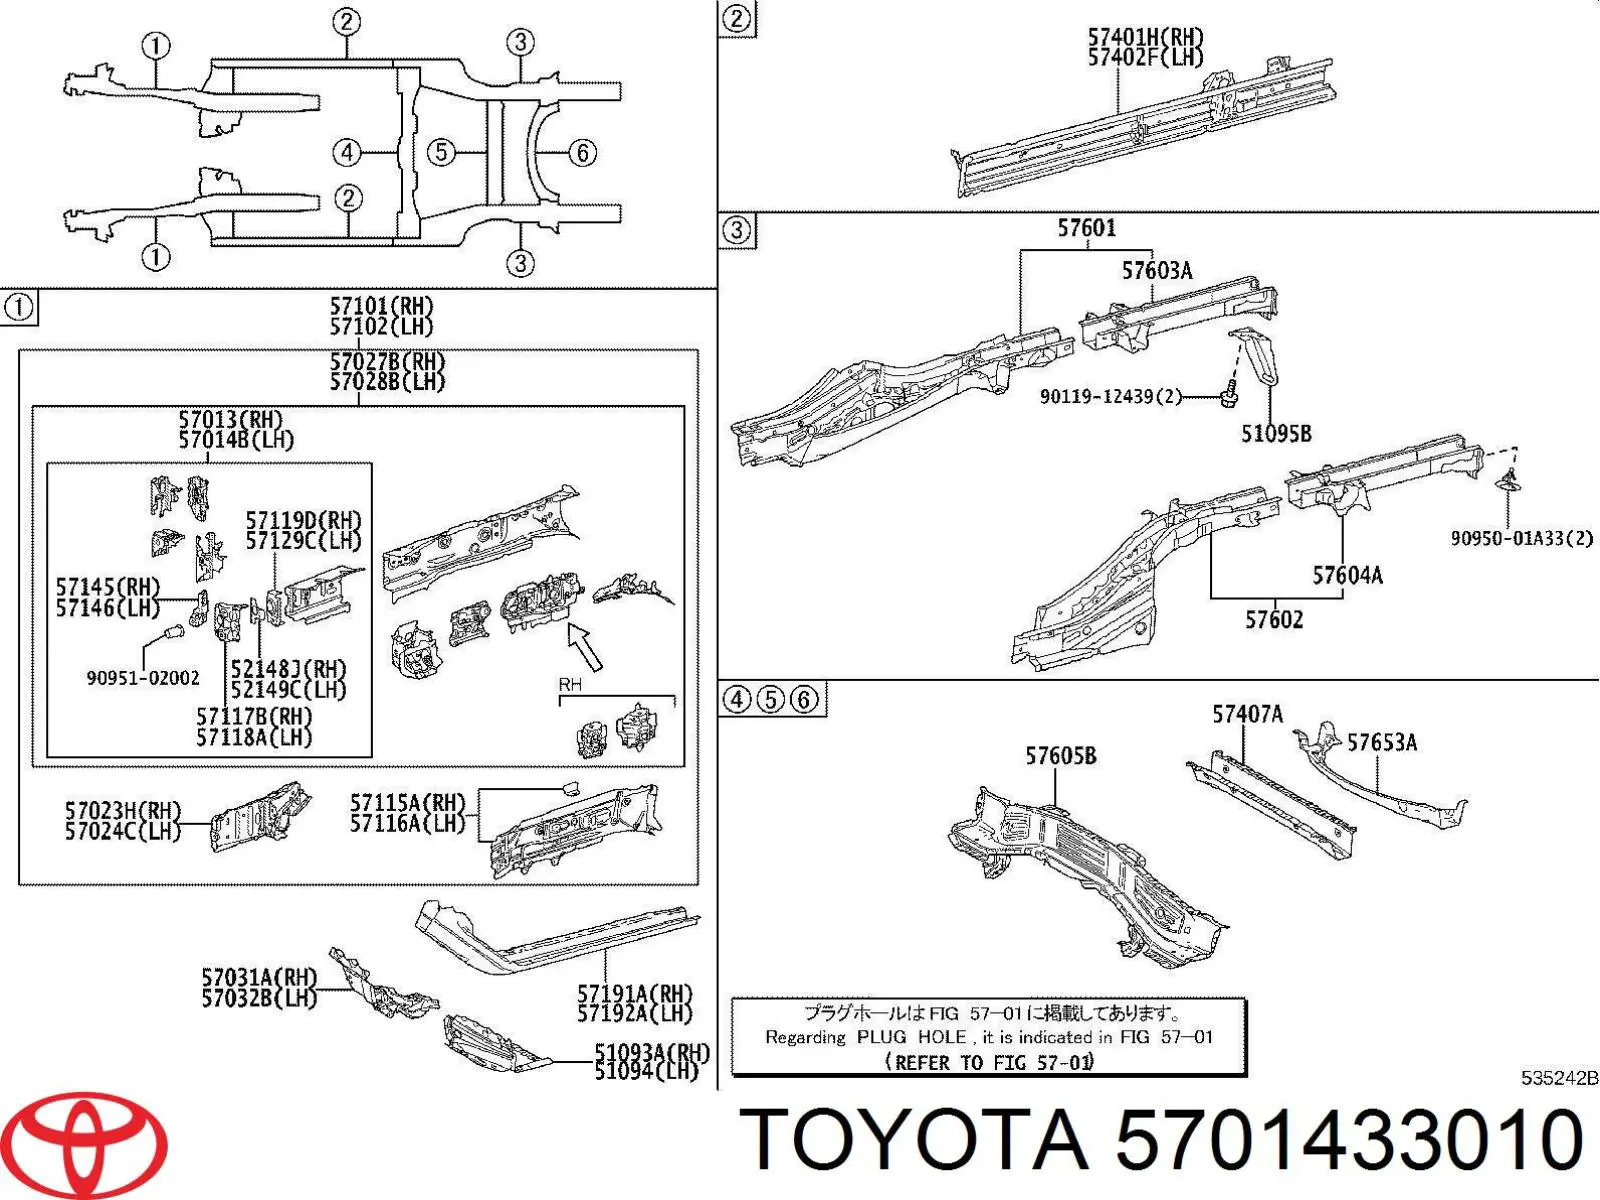 5701433010 Toyota soporte de amplificador de parachoques delantero